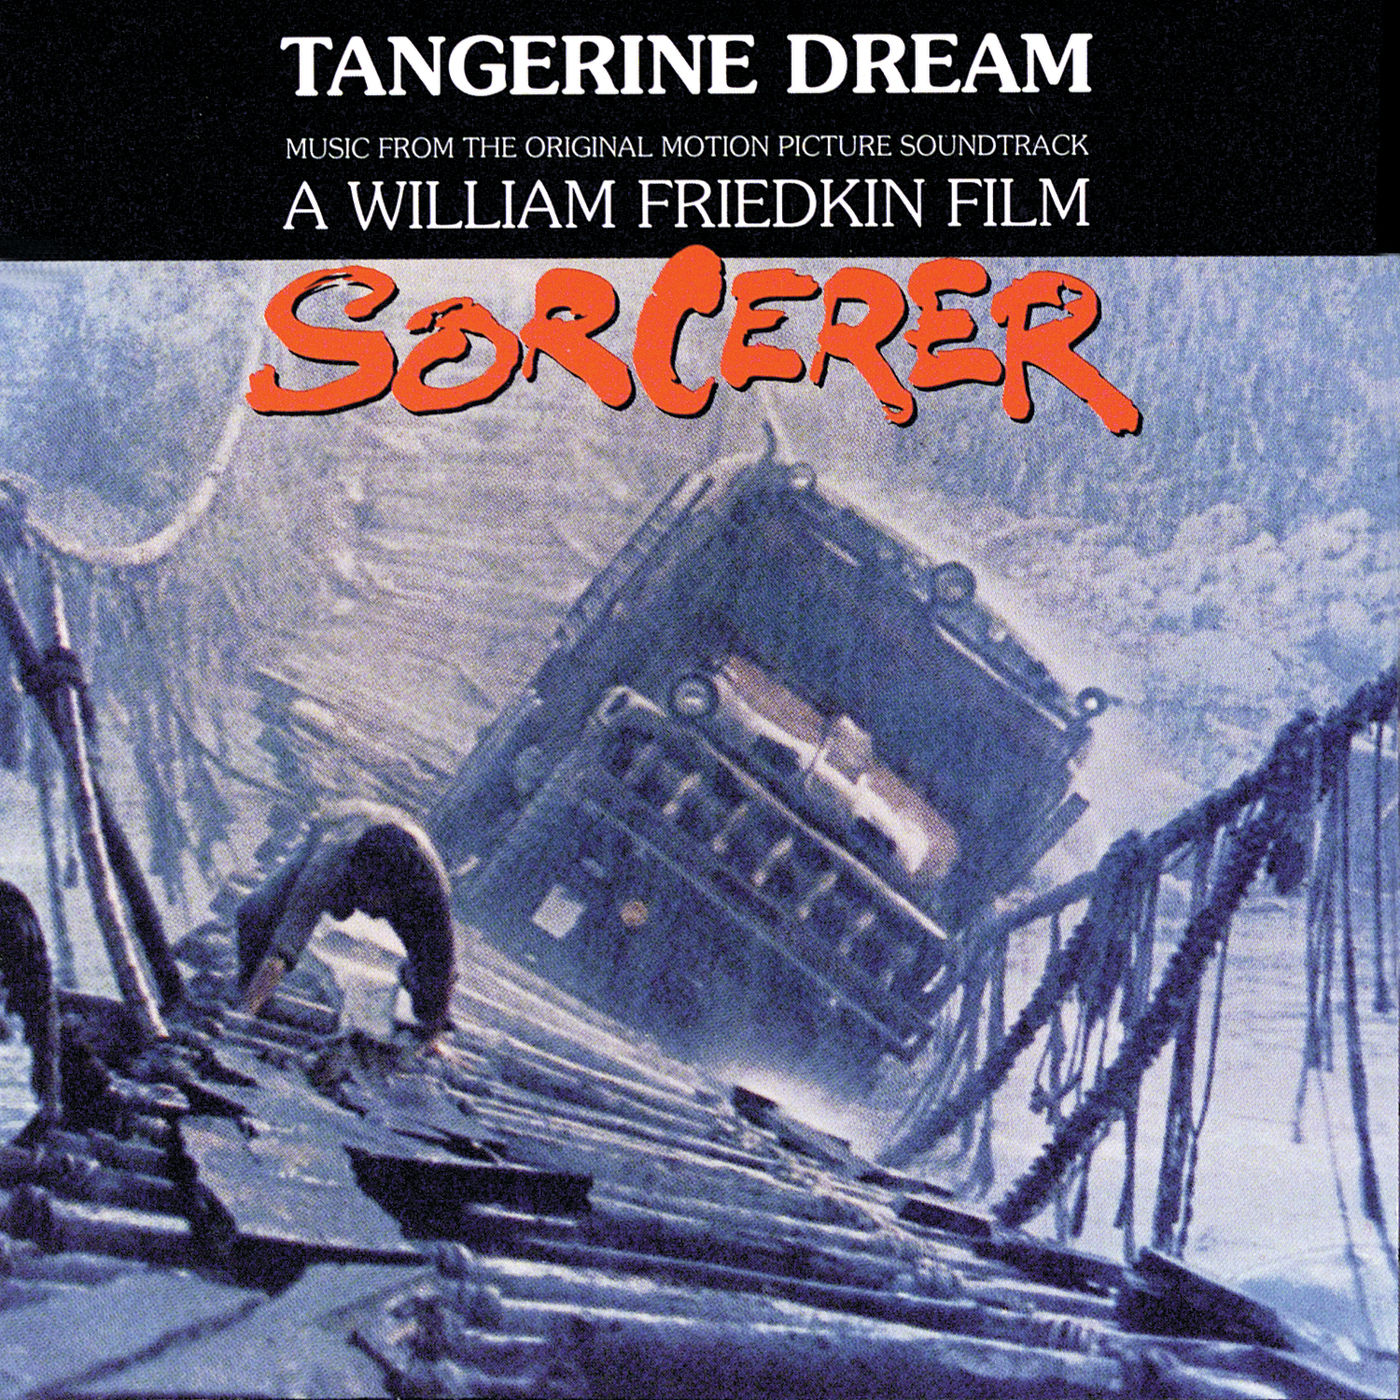 Tangerine Dream – Sorcerer (1977/2021) [FLAC 24bit/96kHz]